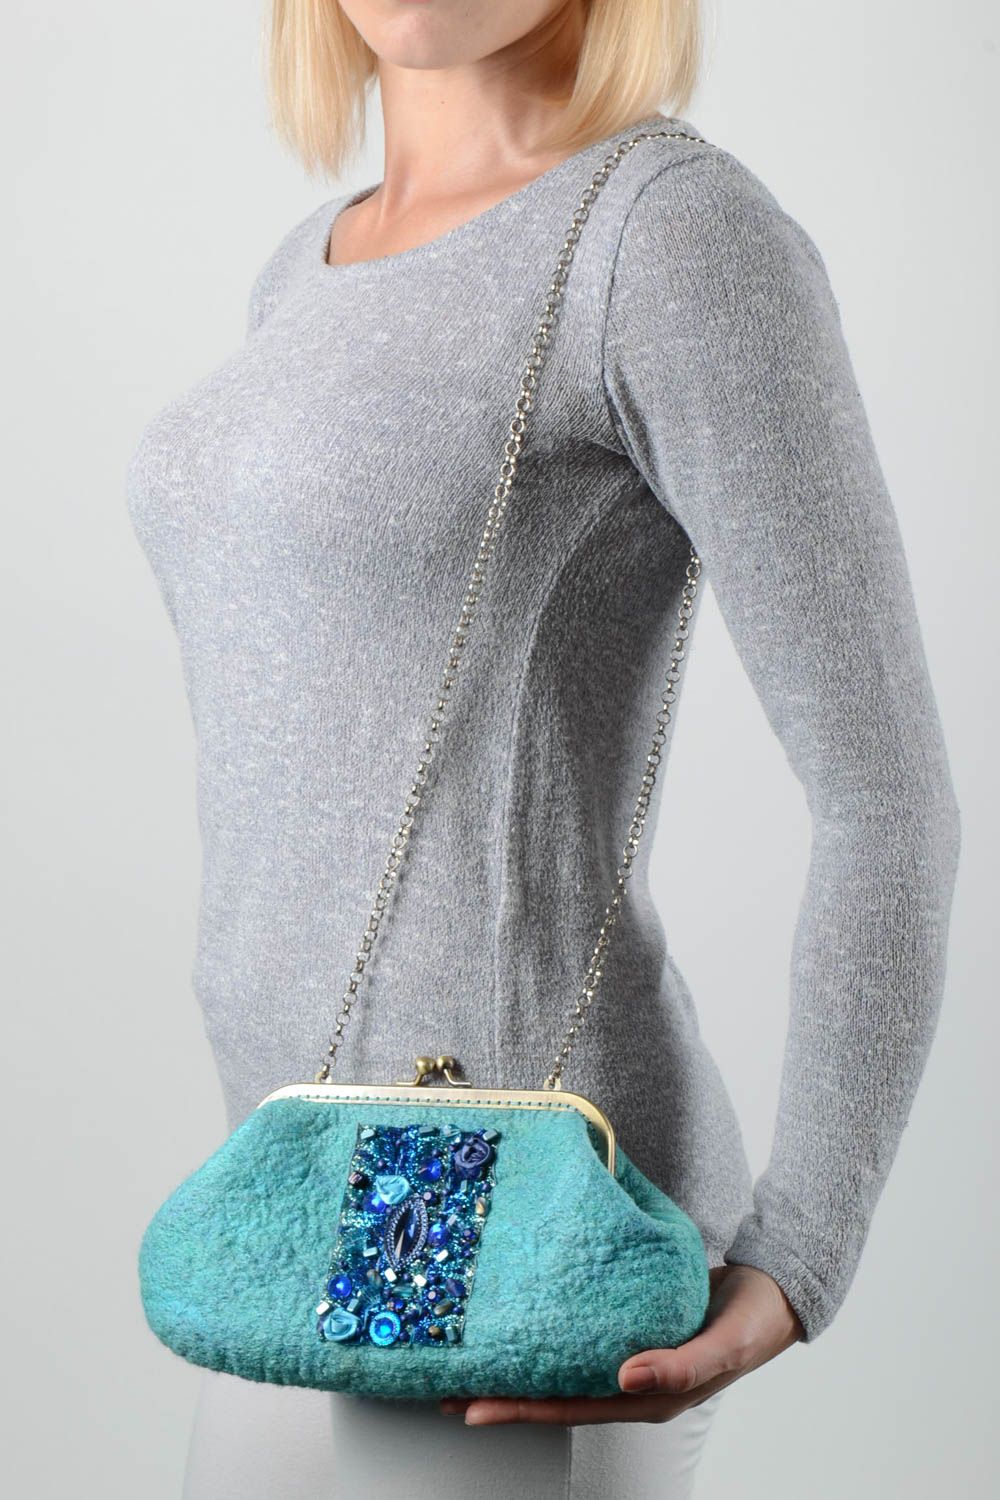 Handmade bag designer bag felting bag woolen bag gift for girls bag for women photo 1